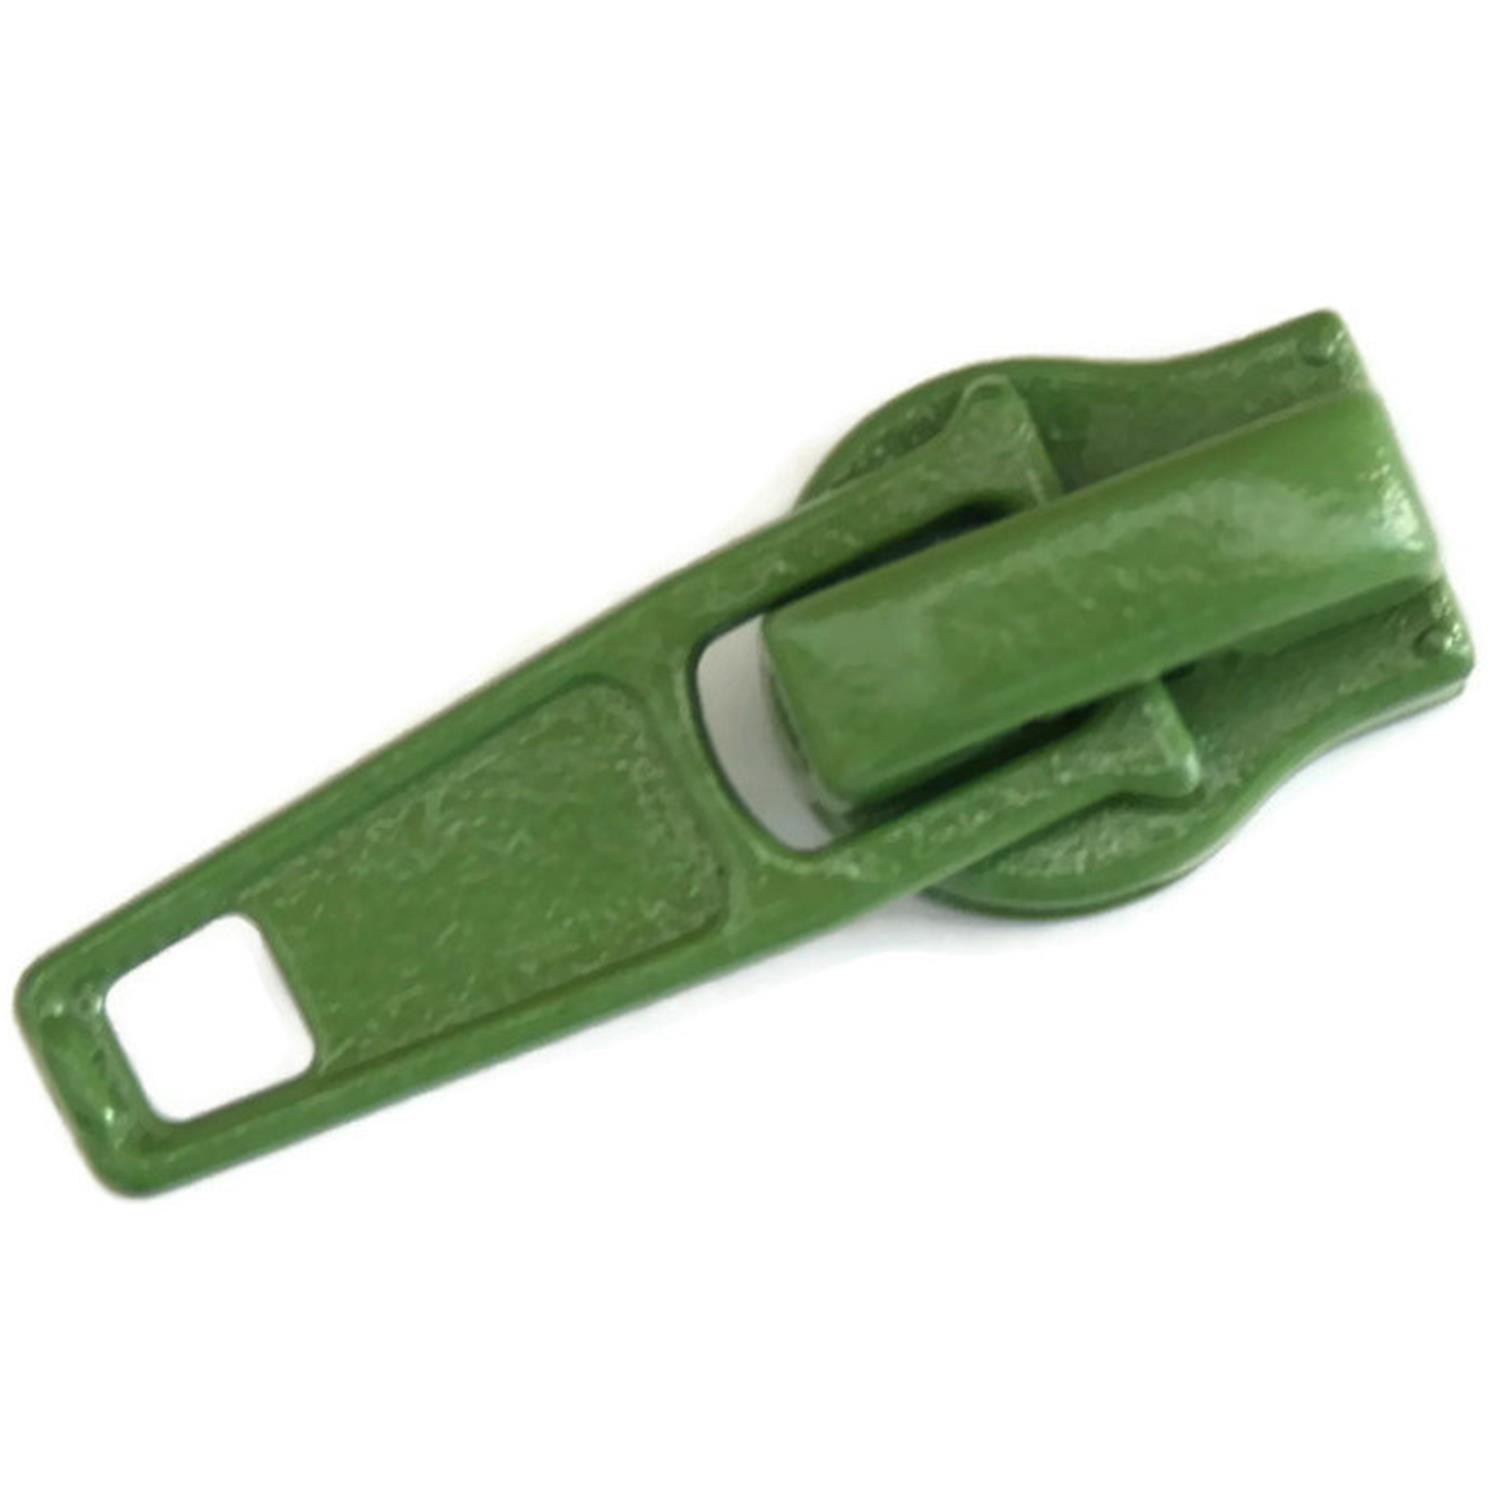 Autolock Schieber für Endlosreißverschluss 5mm, 42 Farben 83 - olivgrün